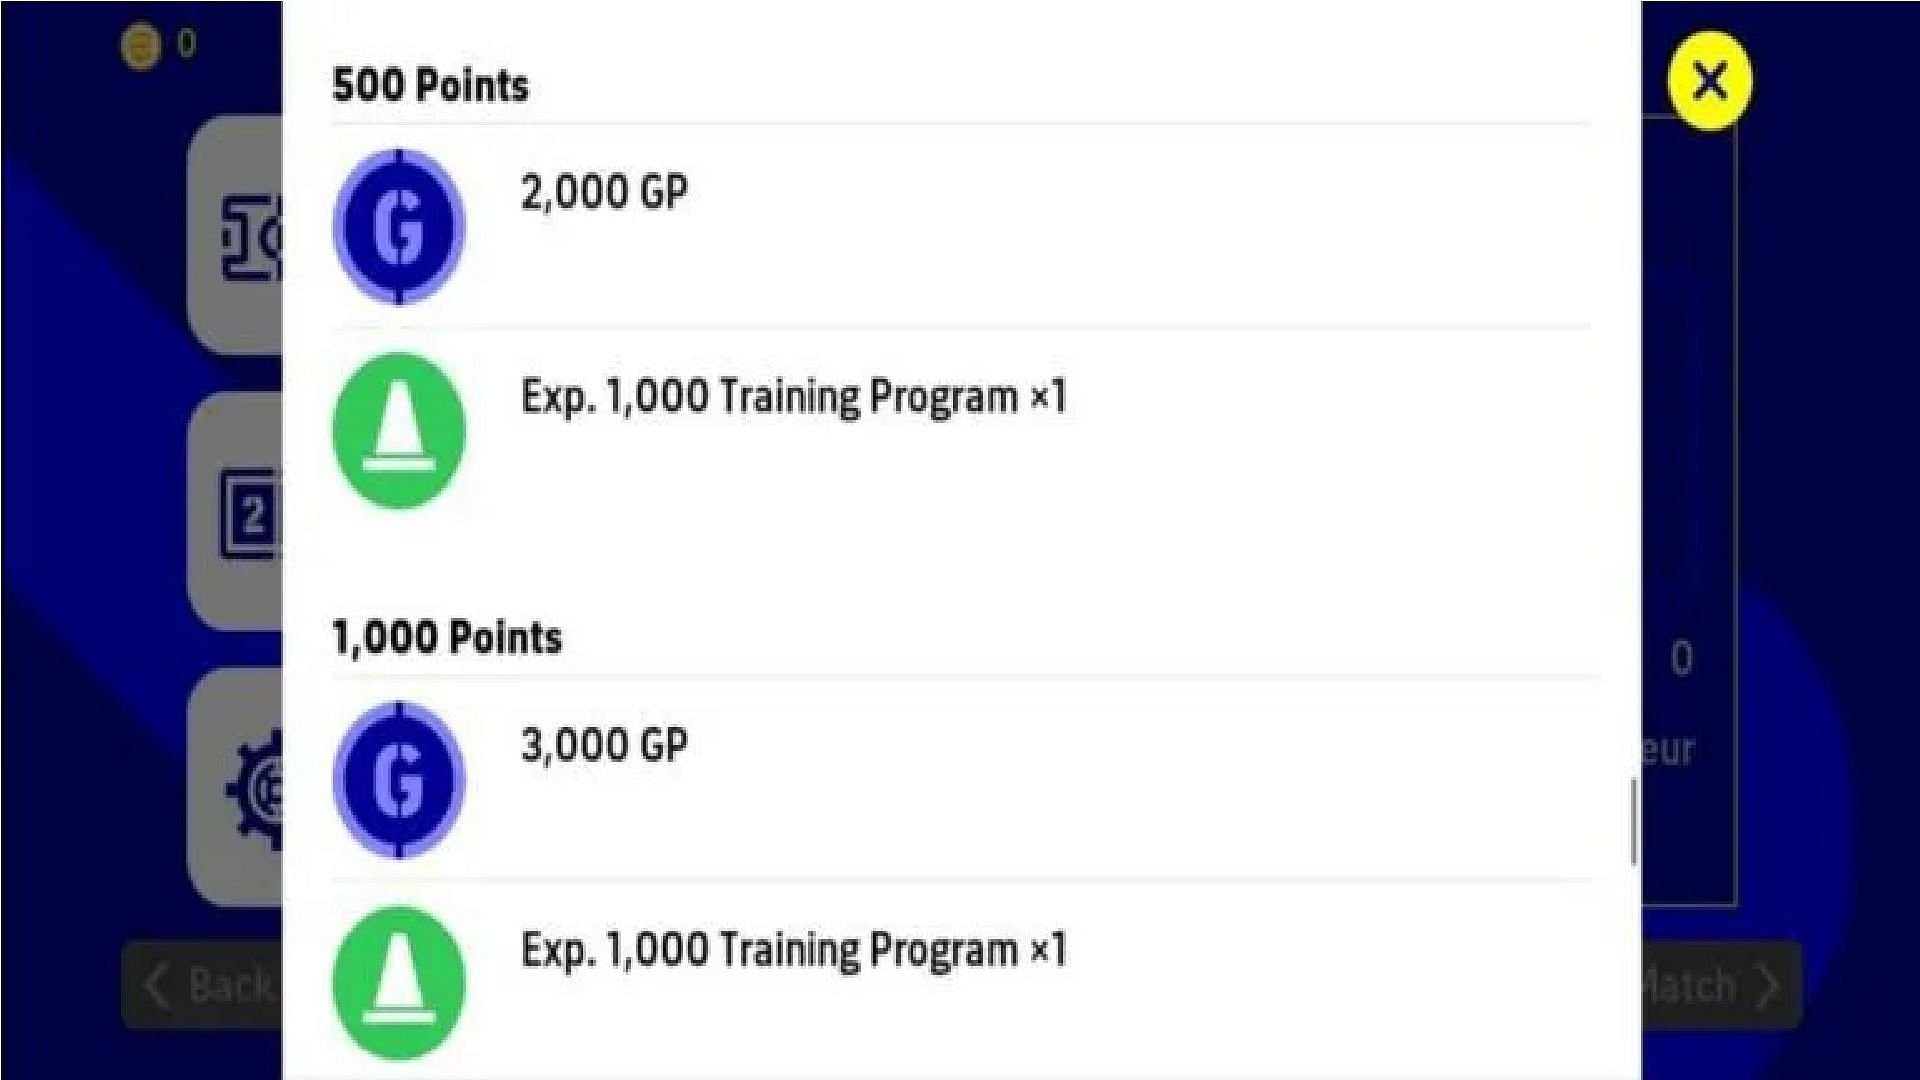 Get Training Programs as event rewards (Image via Konami)